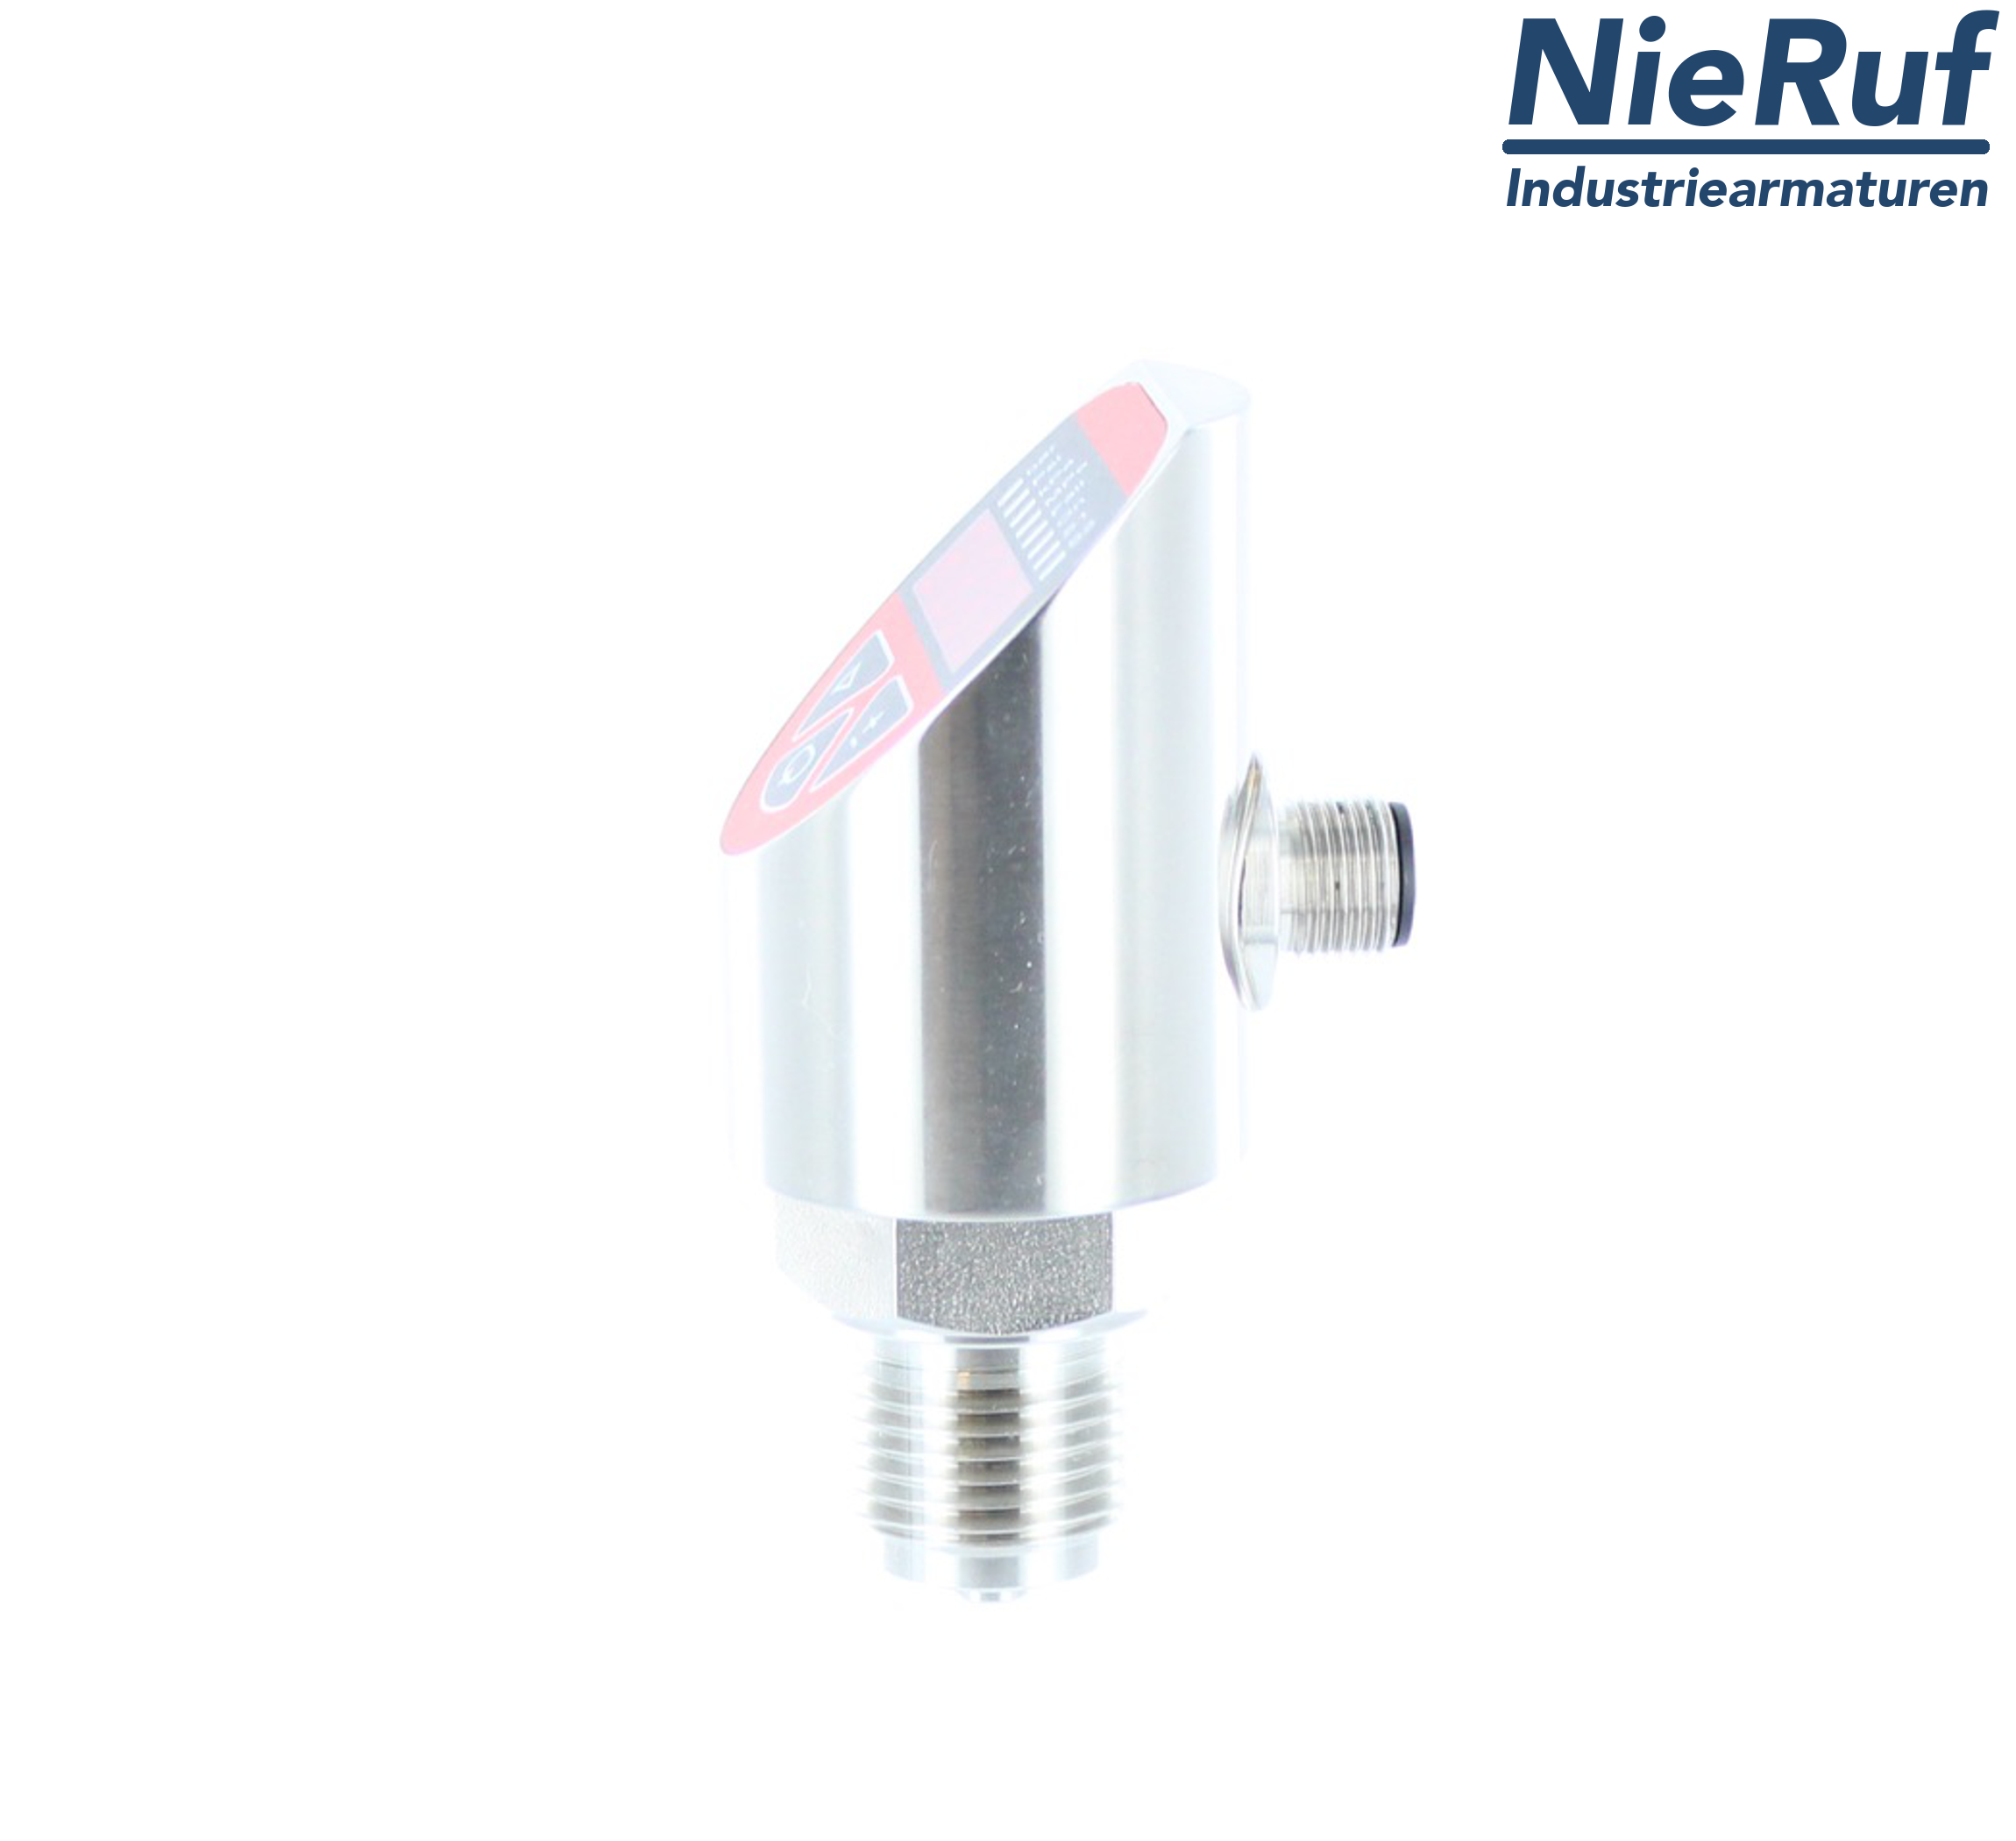 digital pressure sensor G 1/2" B 5-wire: 2xPNP, 1x4 - 20mA FPM 0,0 - 6,0 bar